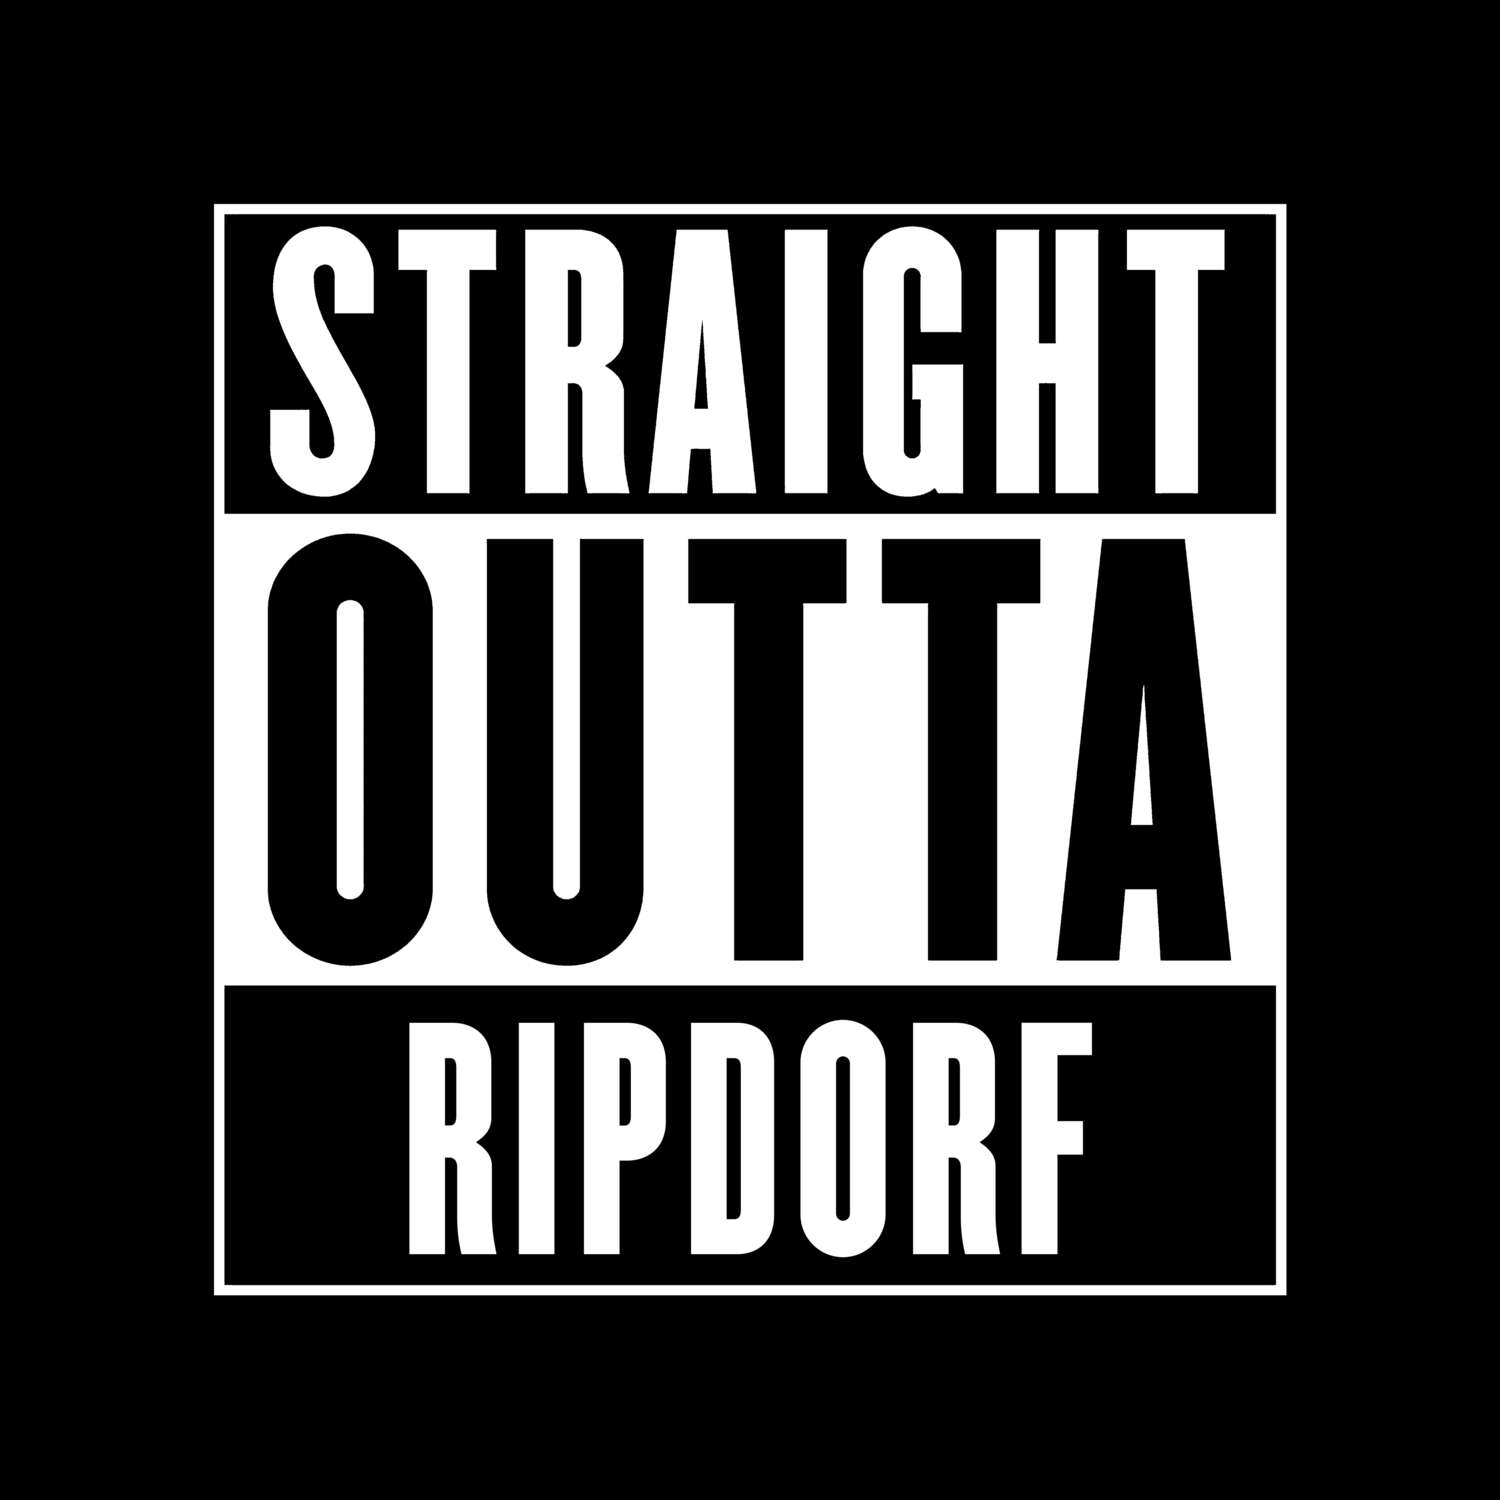 Ripdorf T-Shirt »Straight Outta«